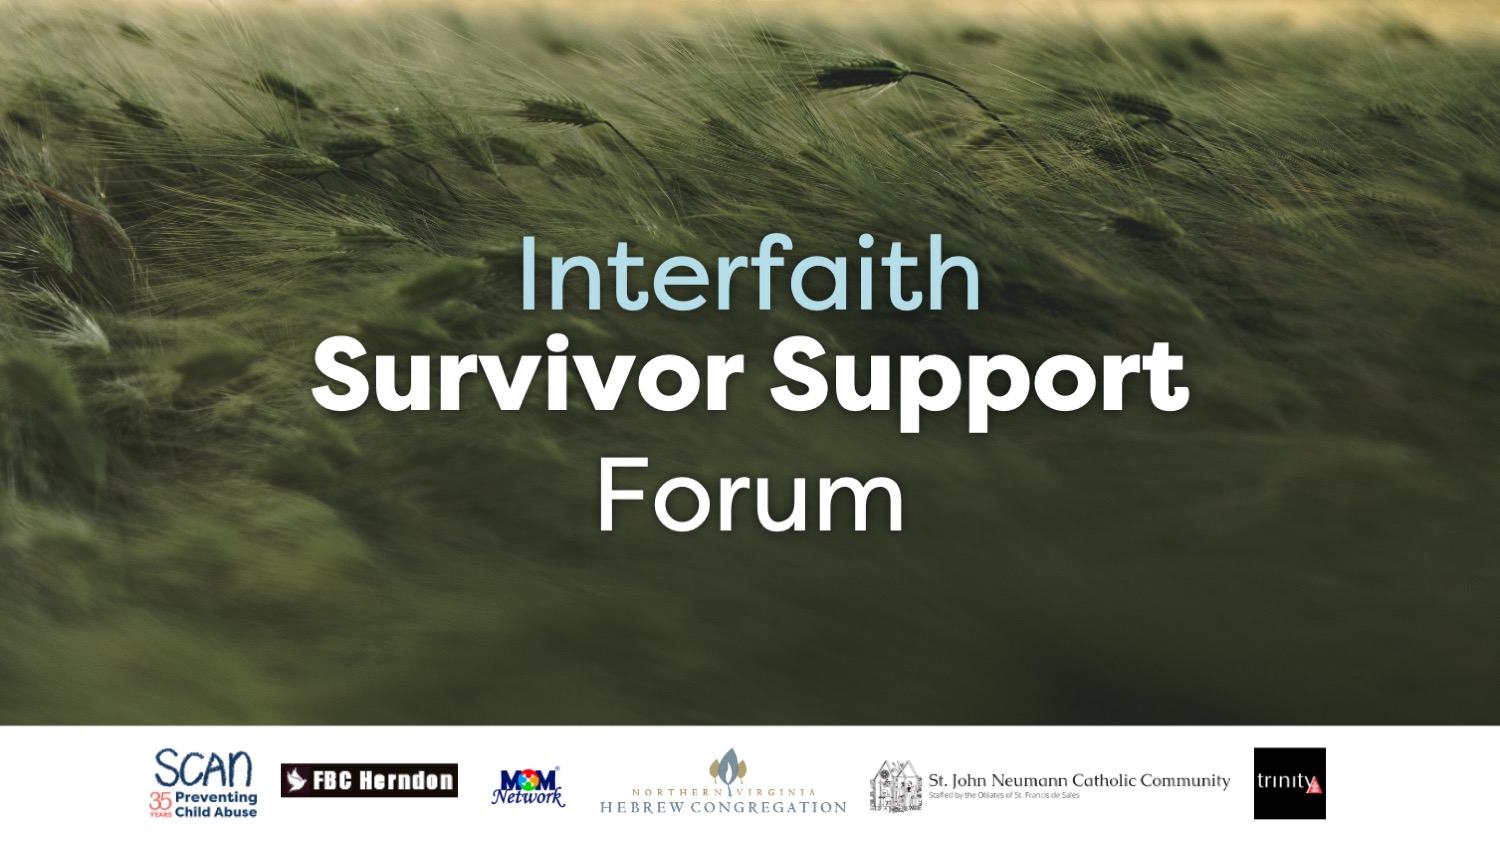 "Interfaith Survivor Support Forum" slide with partner logos